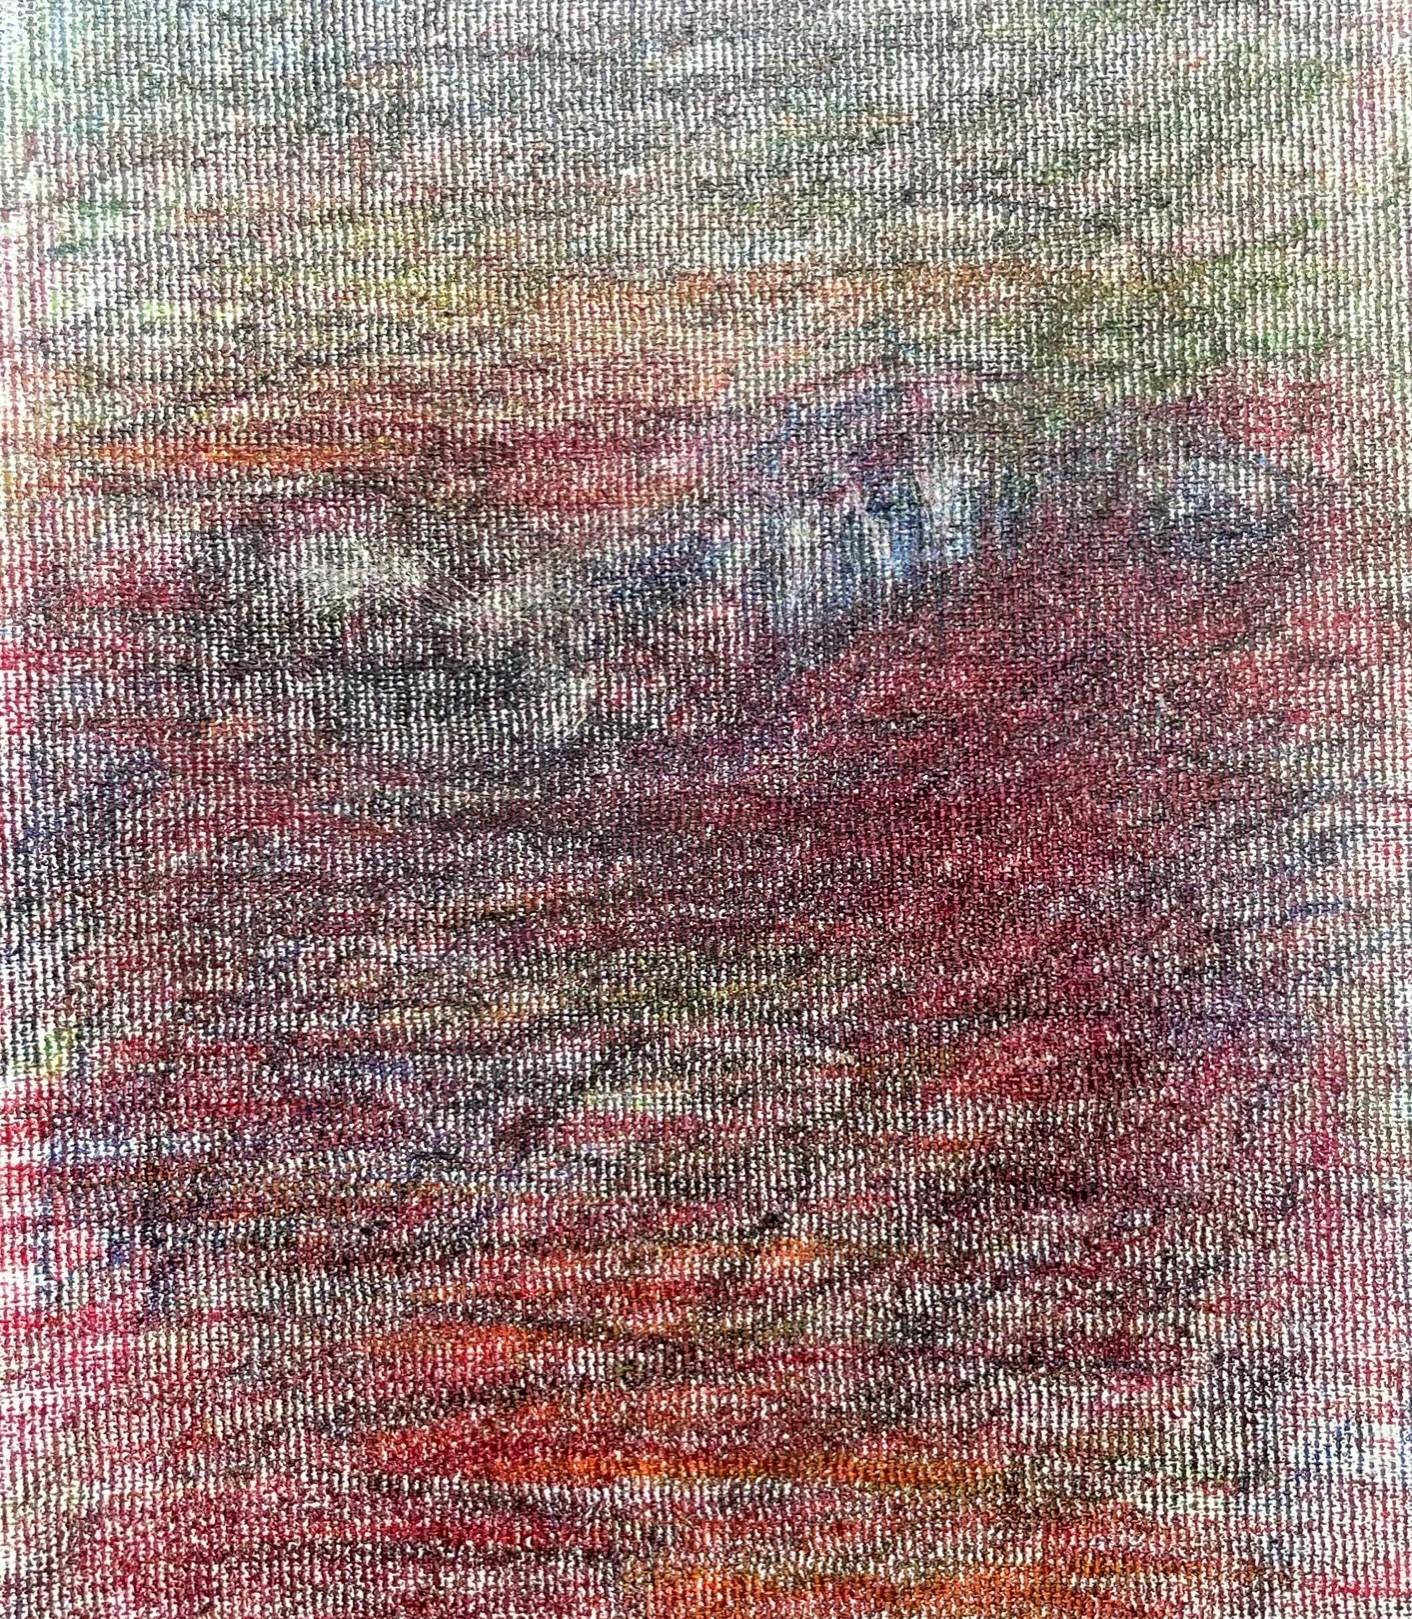 Body in the Field #2 - Rot, Blau, Zeichnung, Buntstifte, Landschaft (Grau), Landscape Art, von Zsolt Berszán